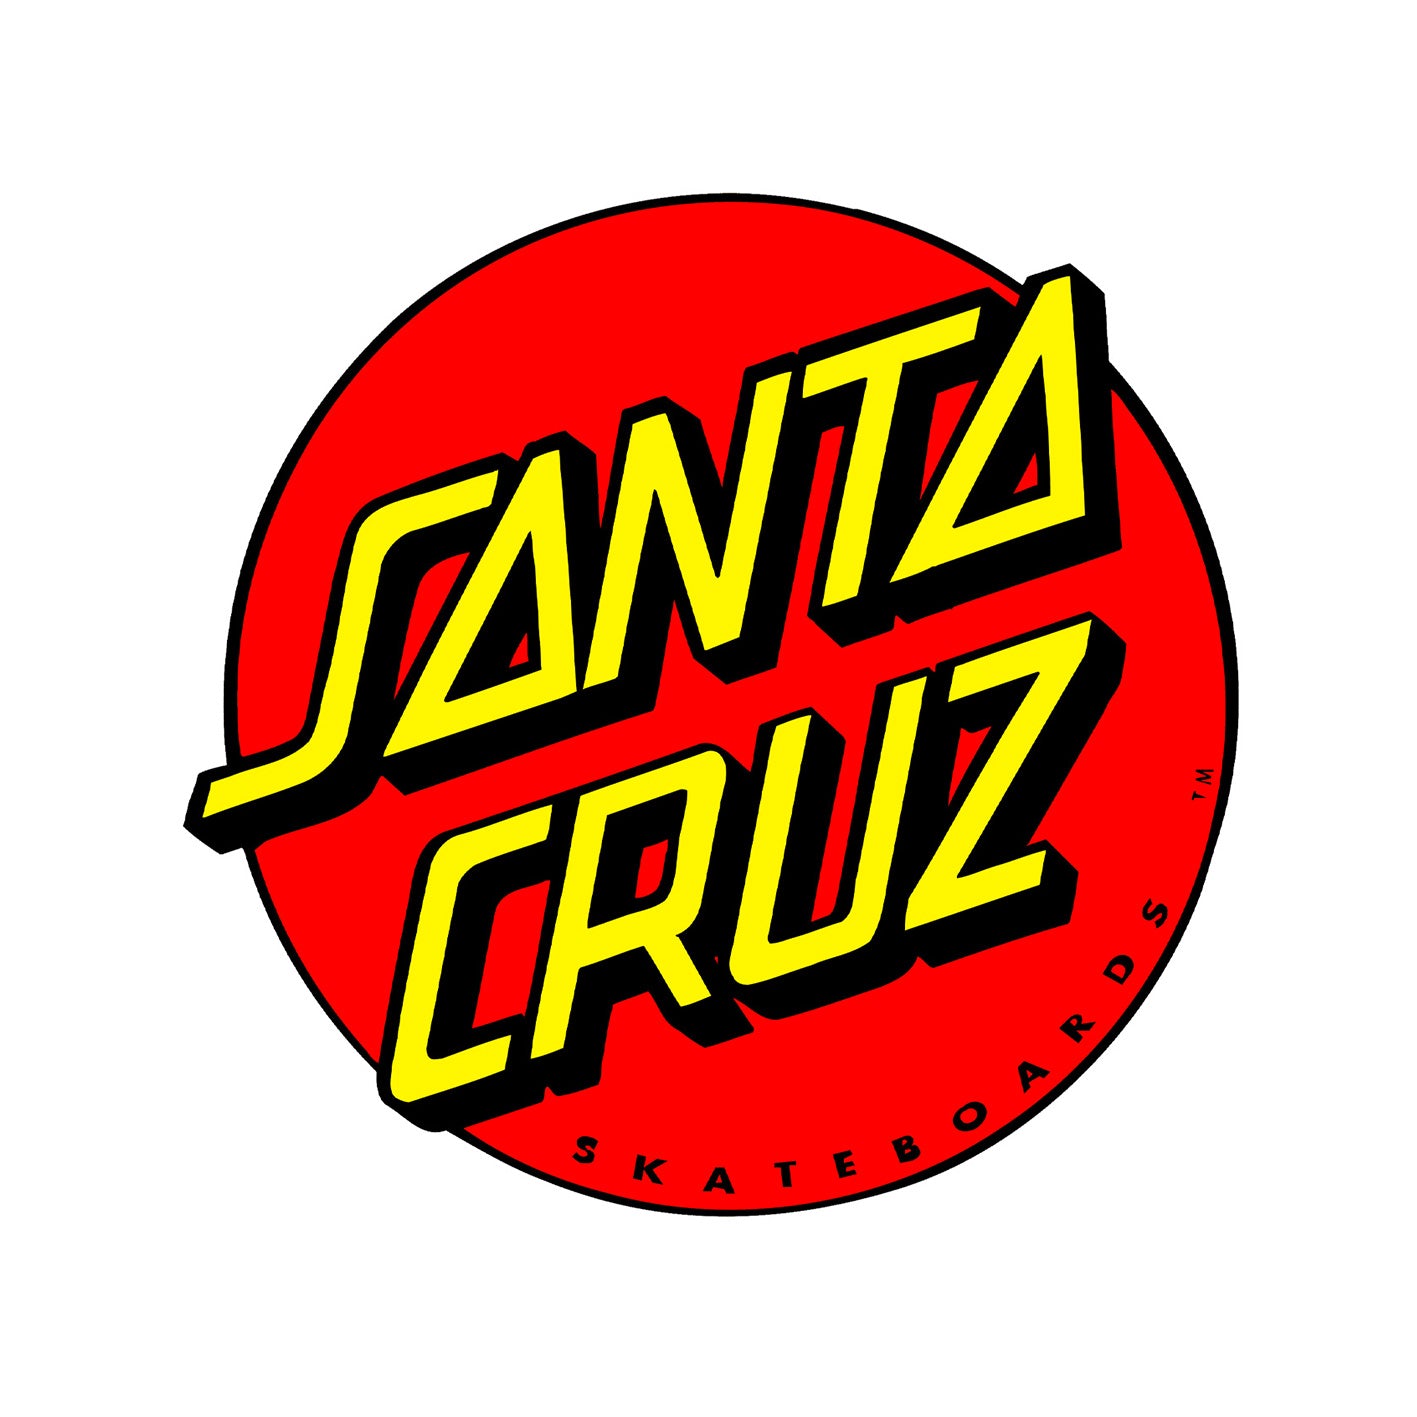 Santa Cruz skateboards